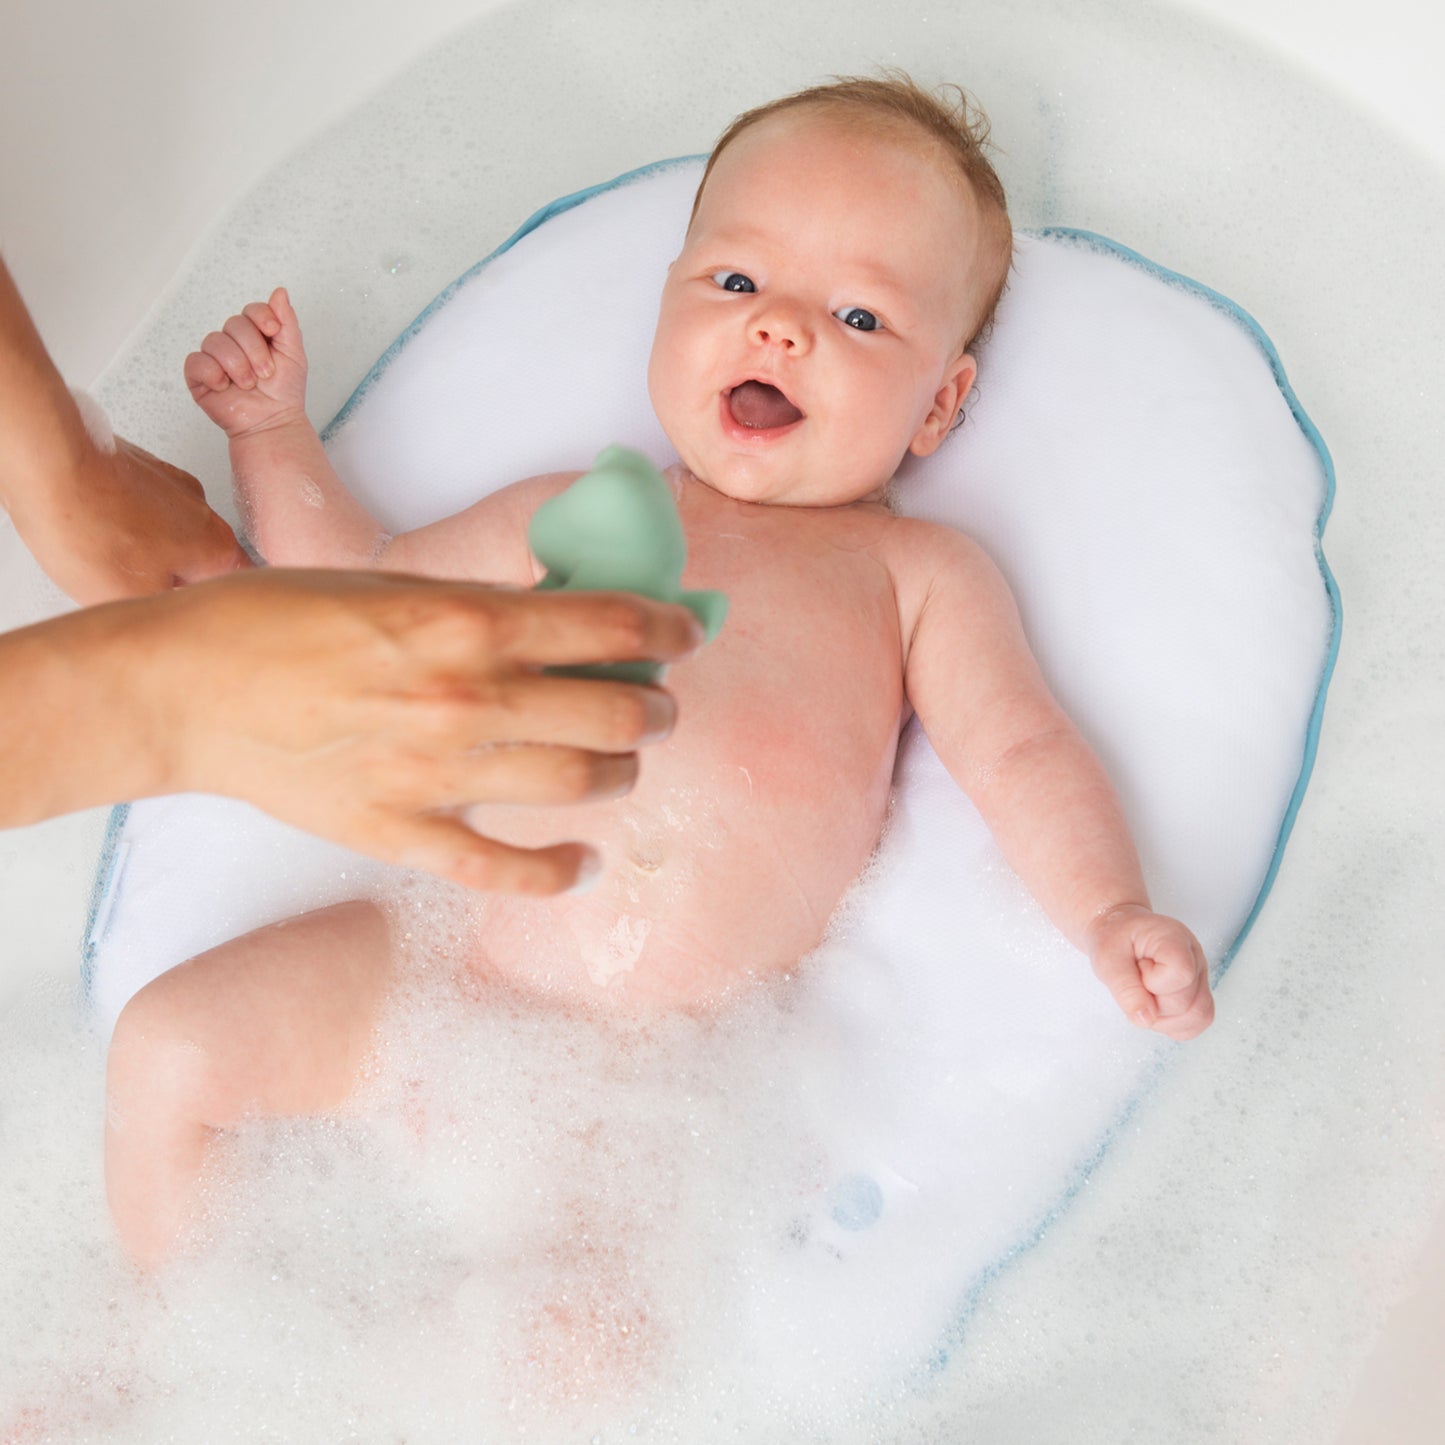 Badekissen, um Ihr Baby freihändig zu baden. Es kann sicher im Wasser liegen. Sicher für das Baby und rückenschonend für die Eltern